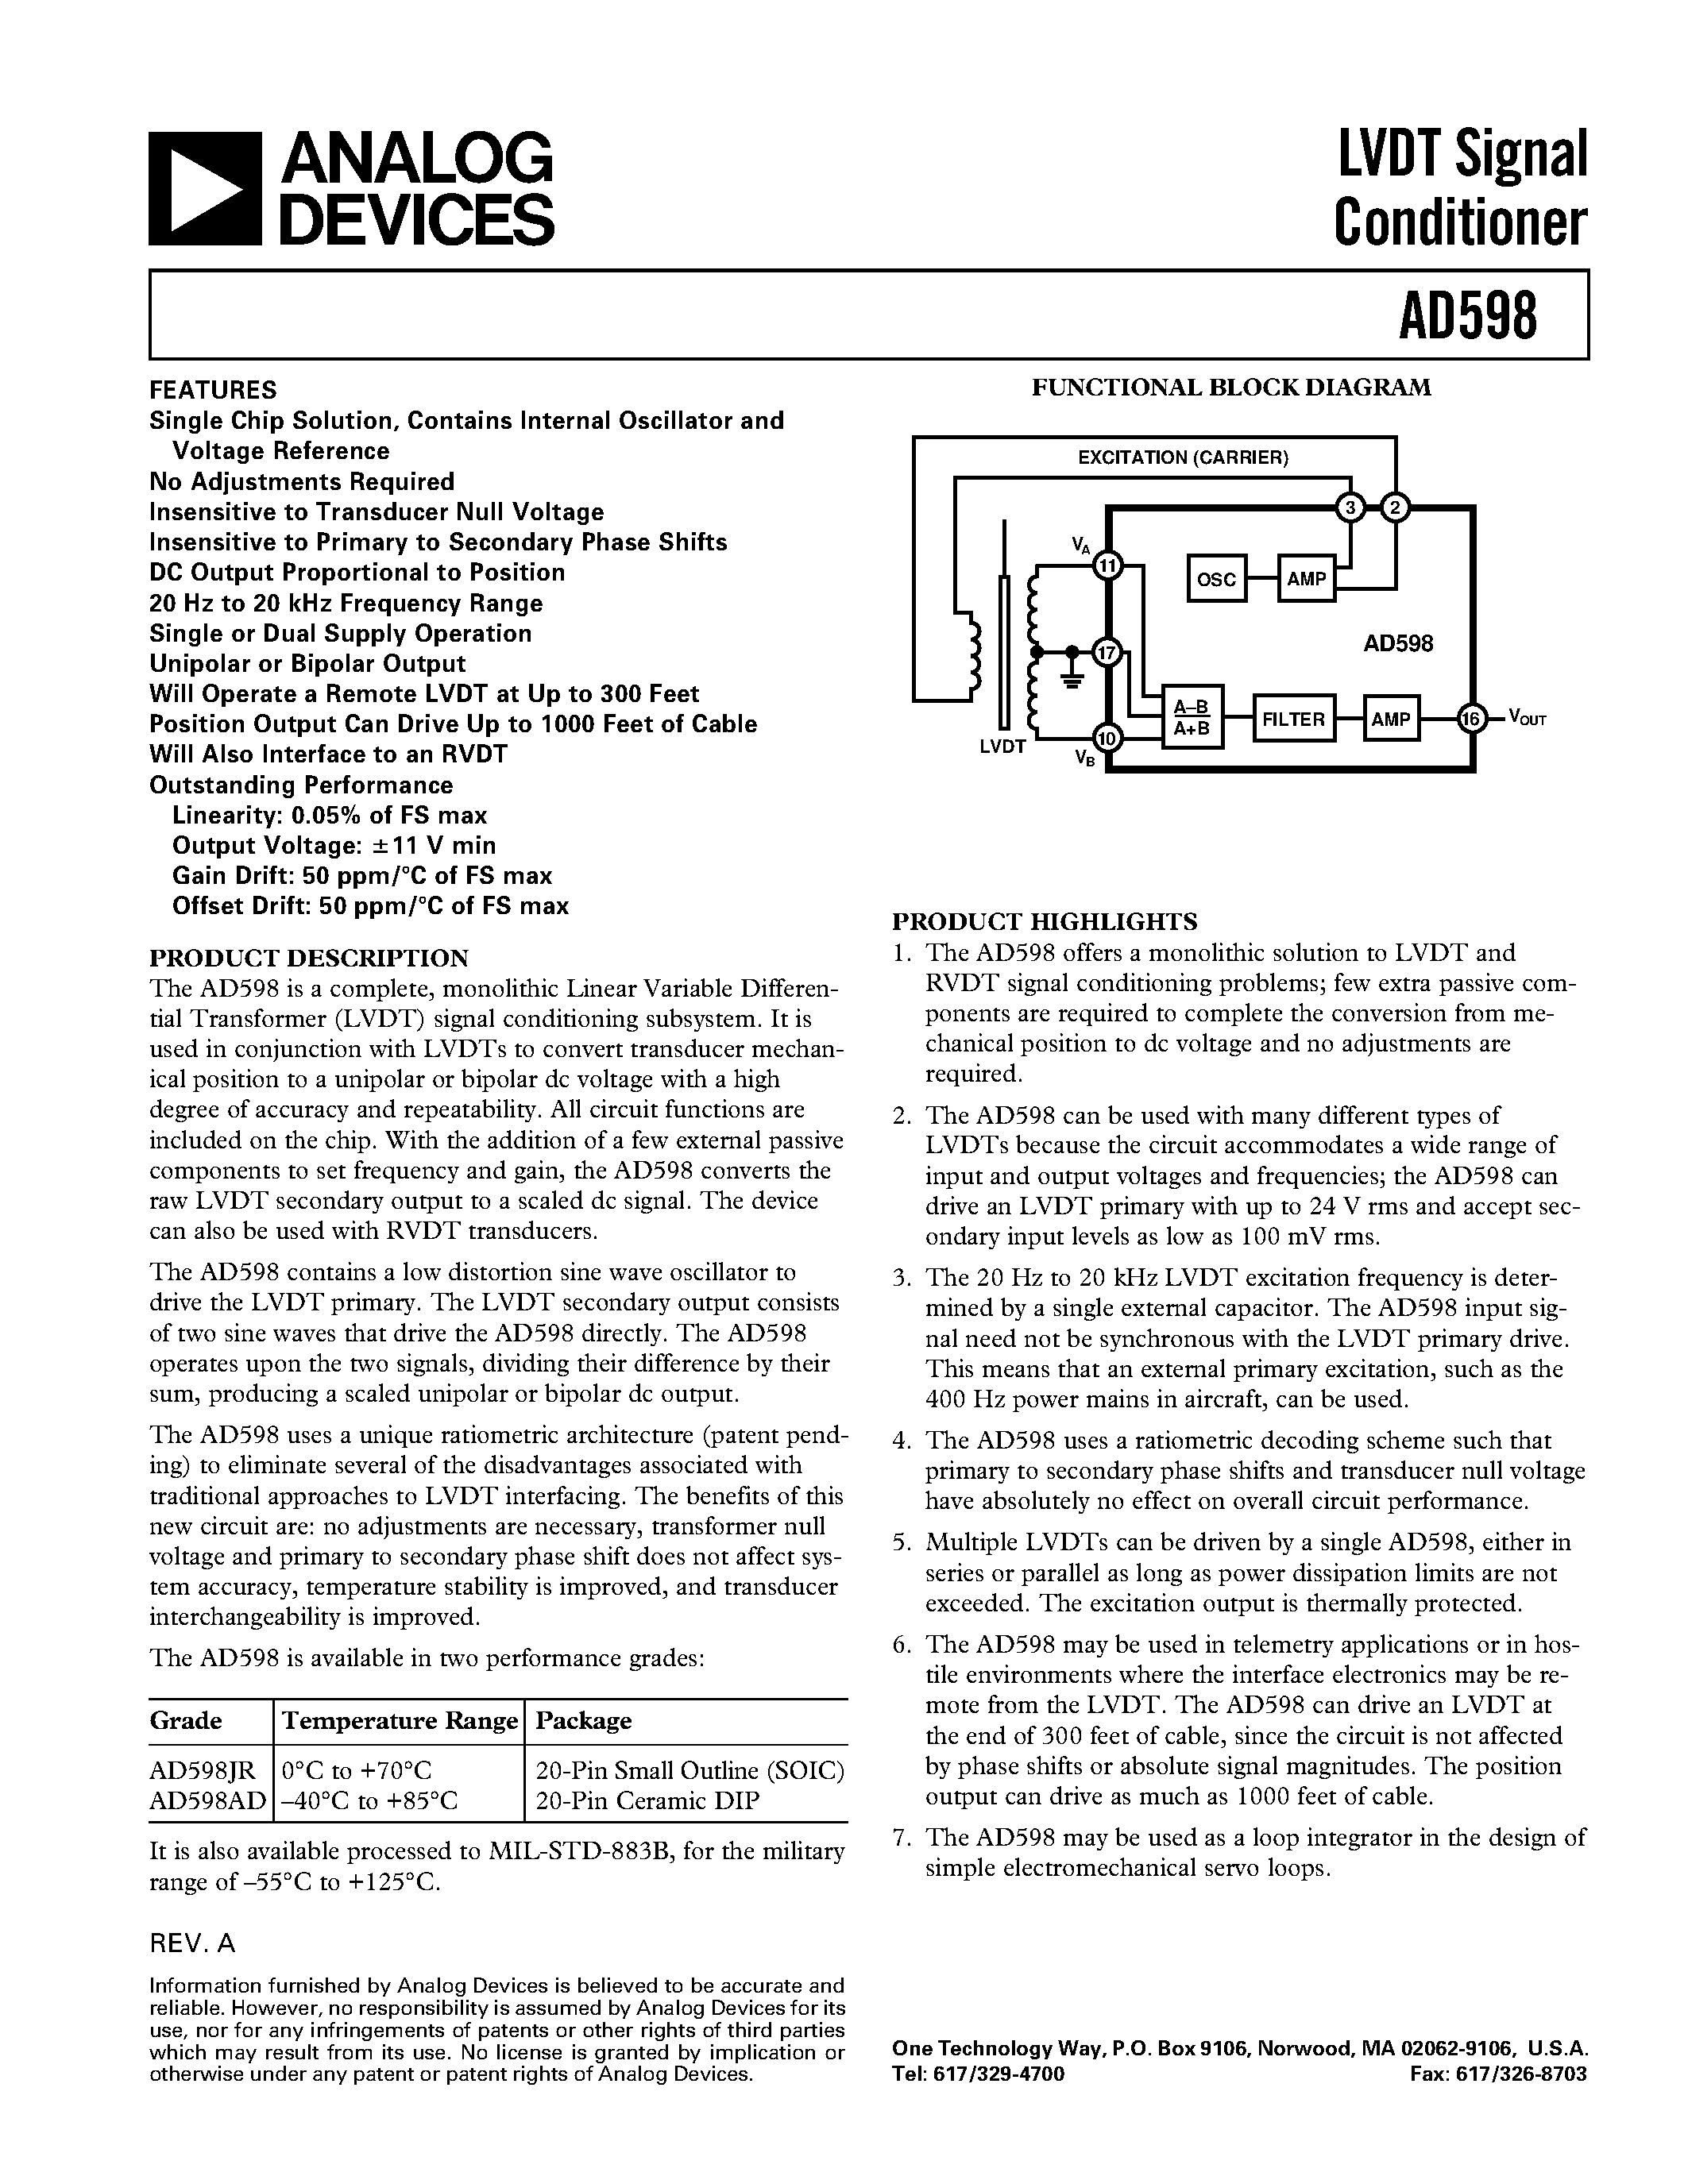 Даташит AD598JR - LVDT Signal Conditioner страница 1